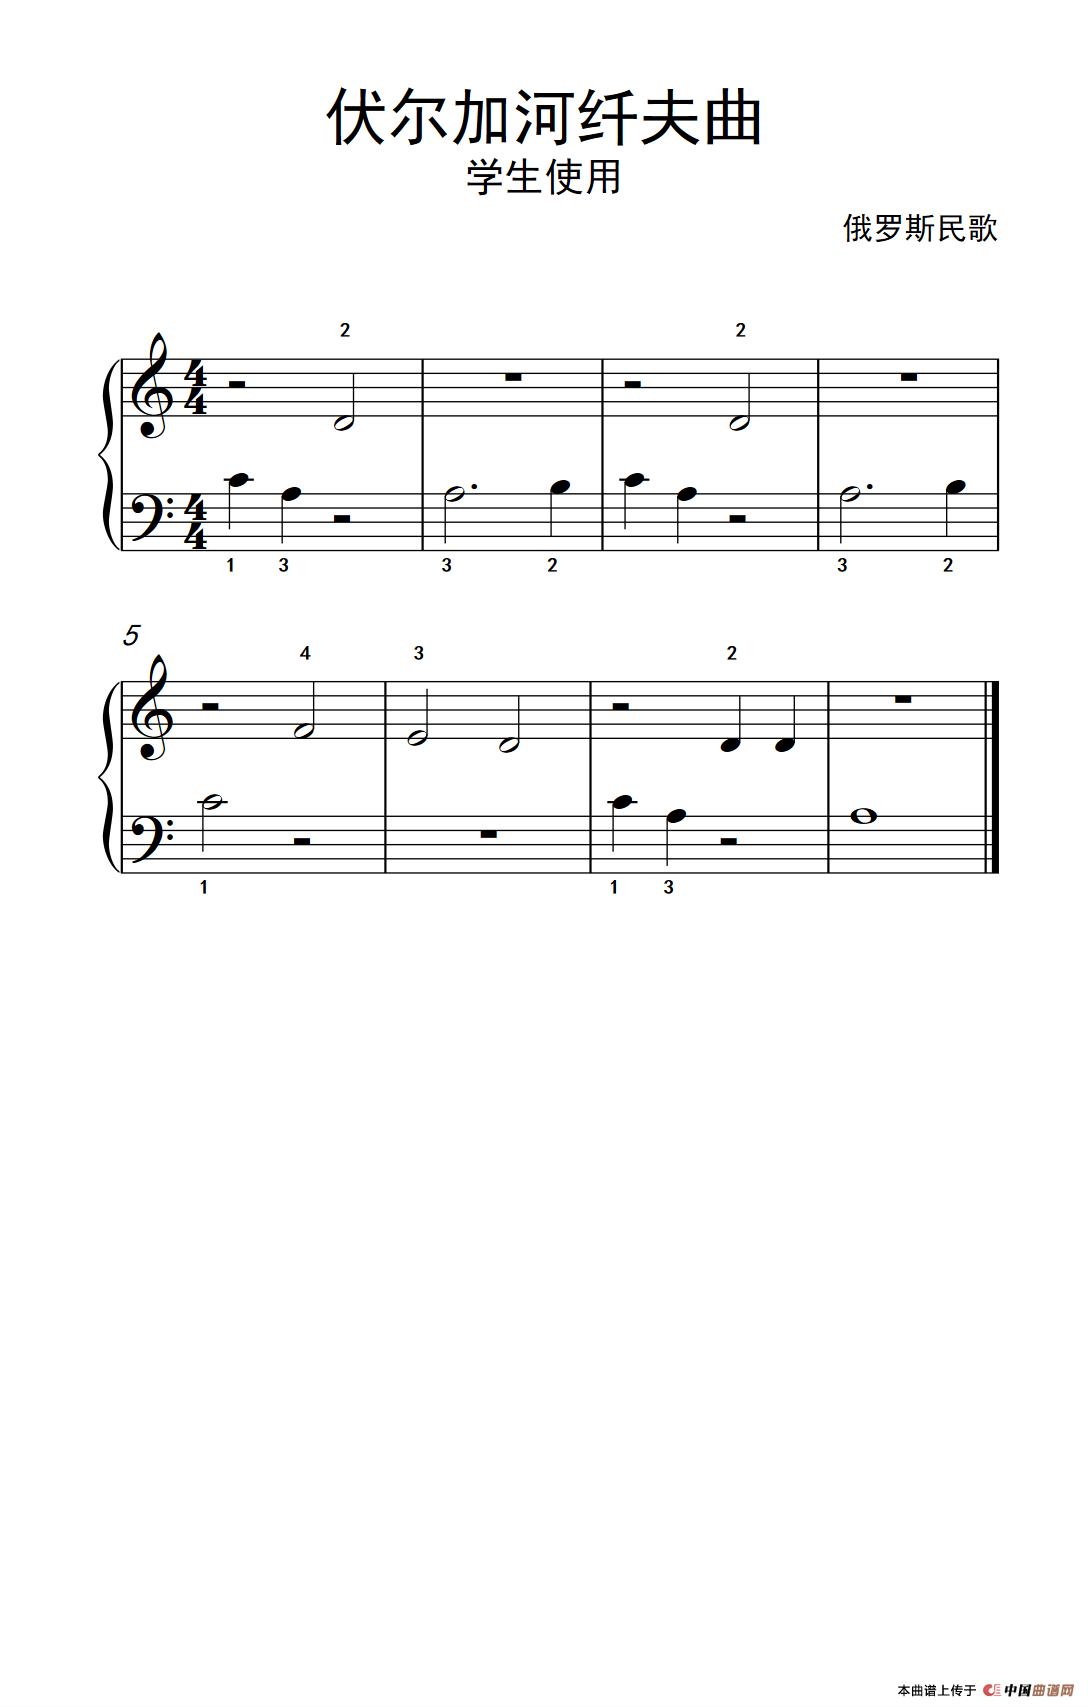 《伏尔加河纤夫曲-学生使用》钢琴曲谱图分享